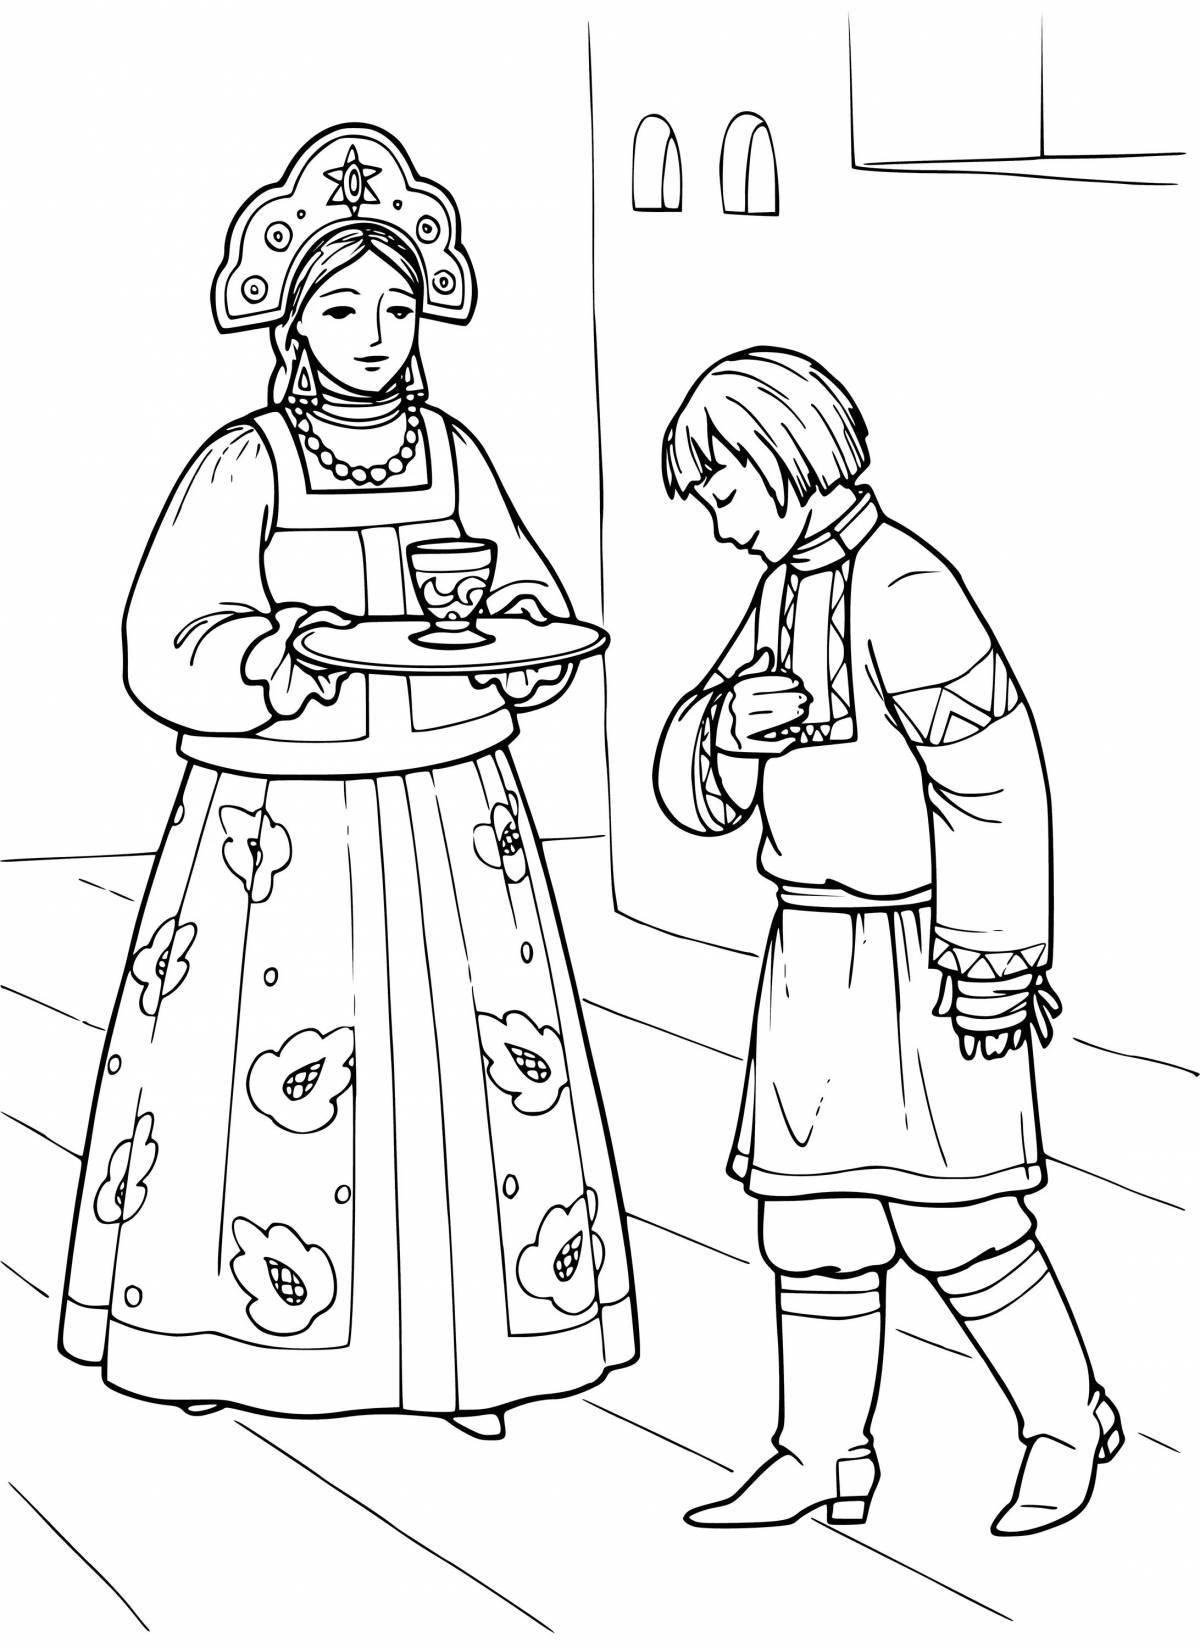 Russian folk costume for children #2